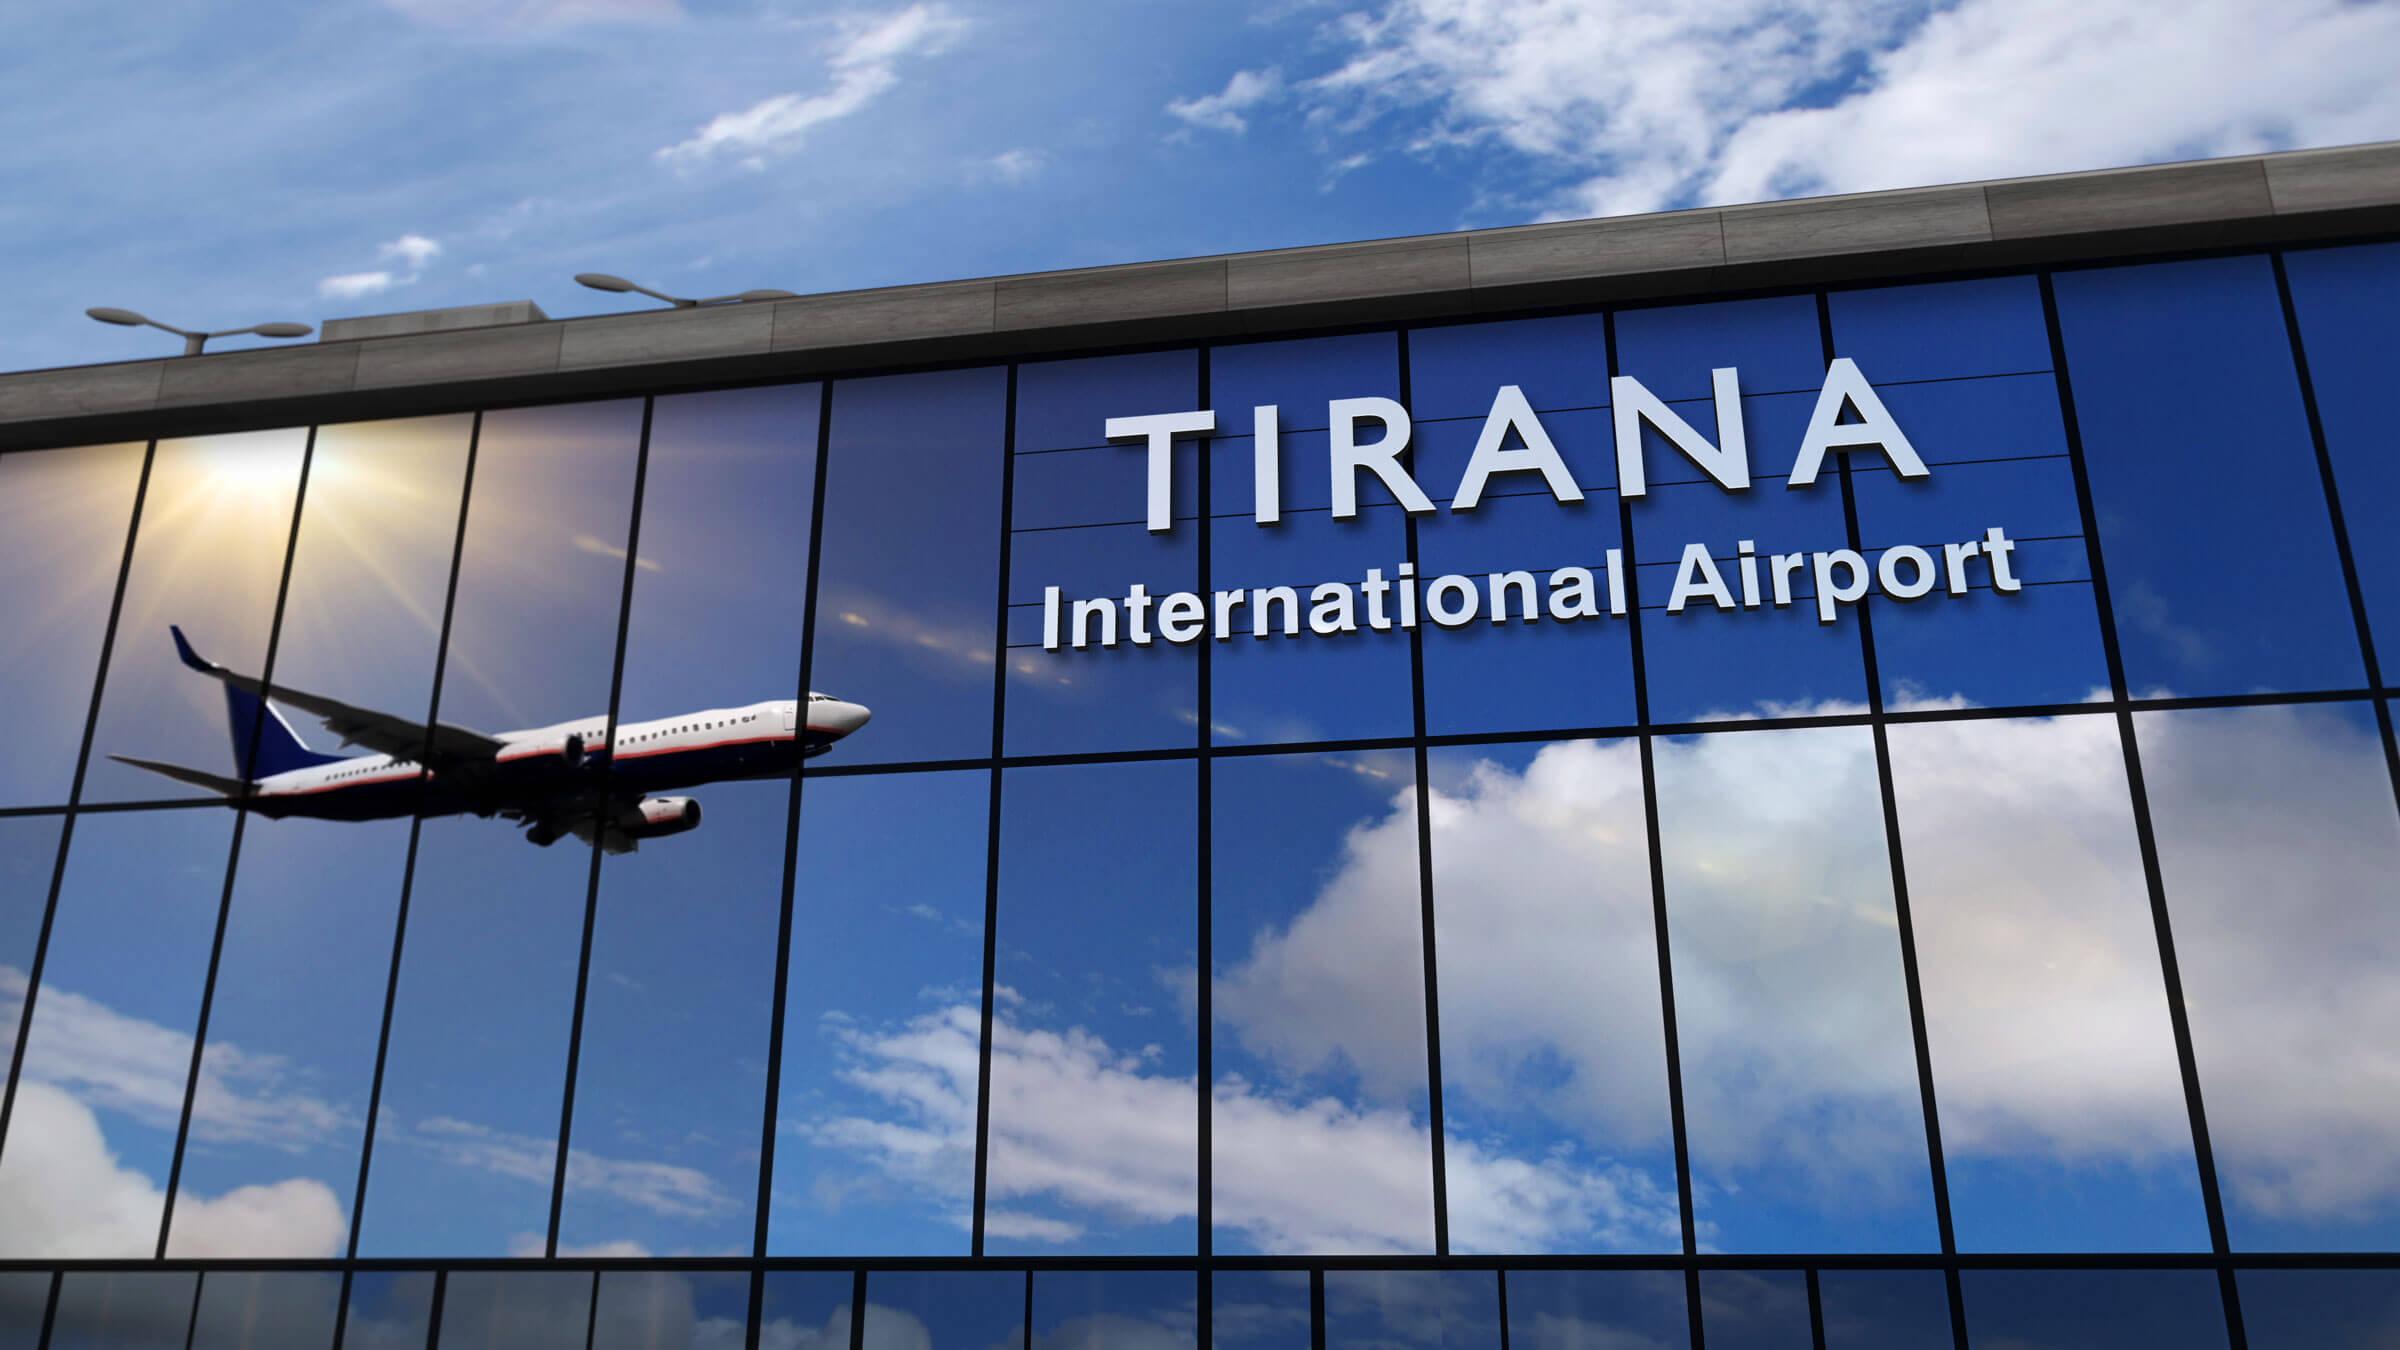 Tirana Inernational Airport